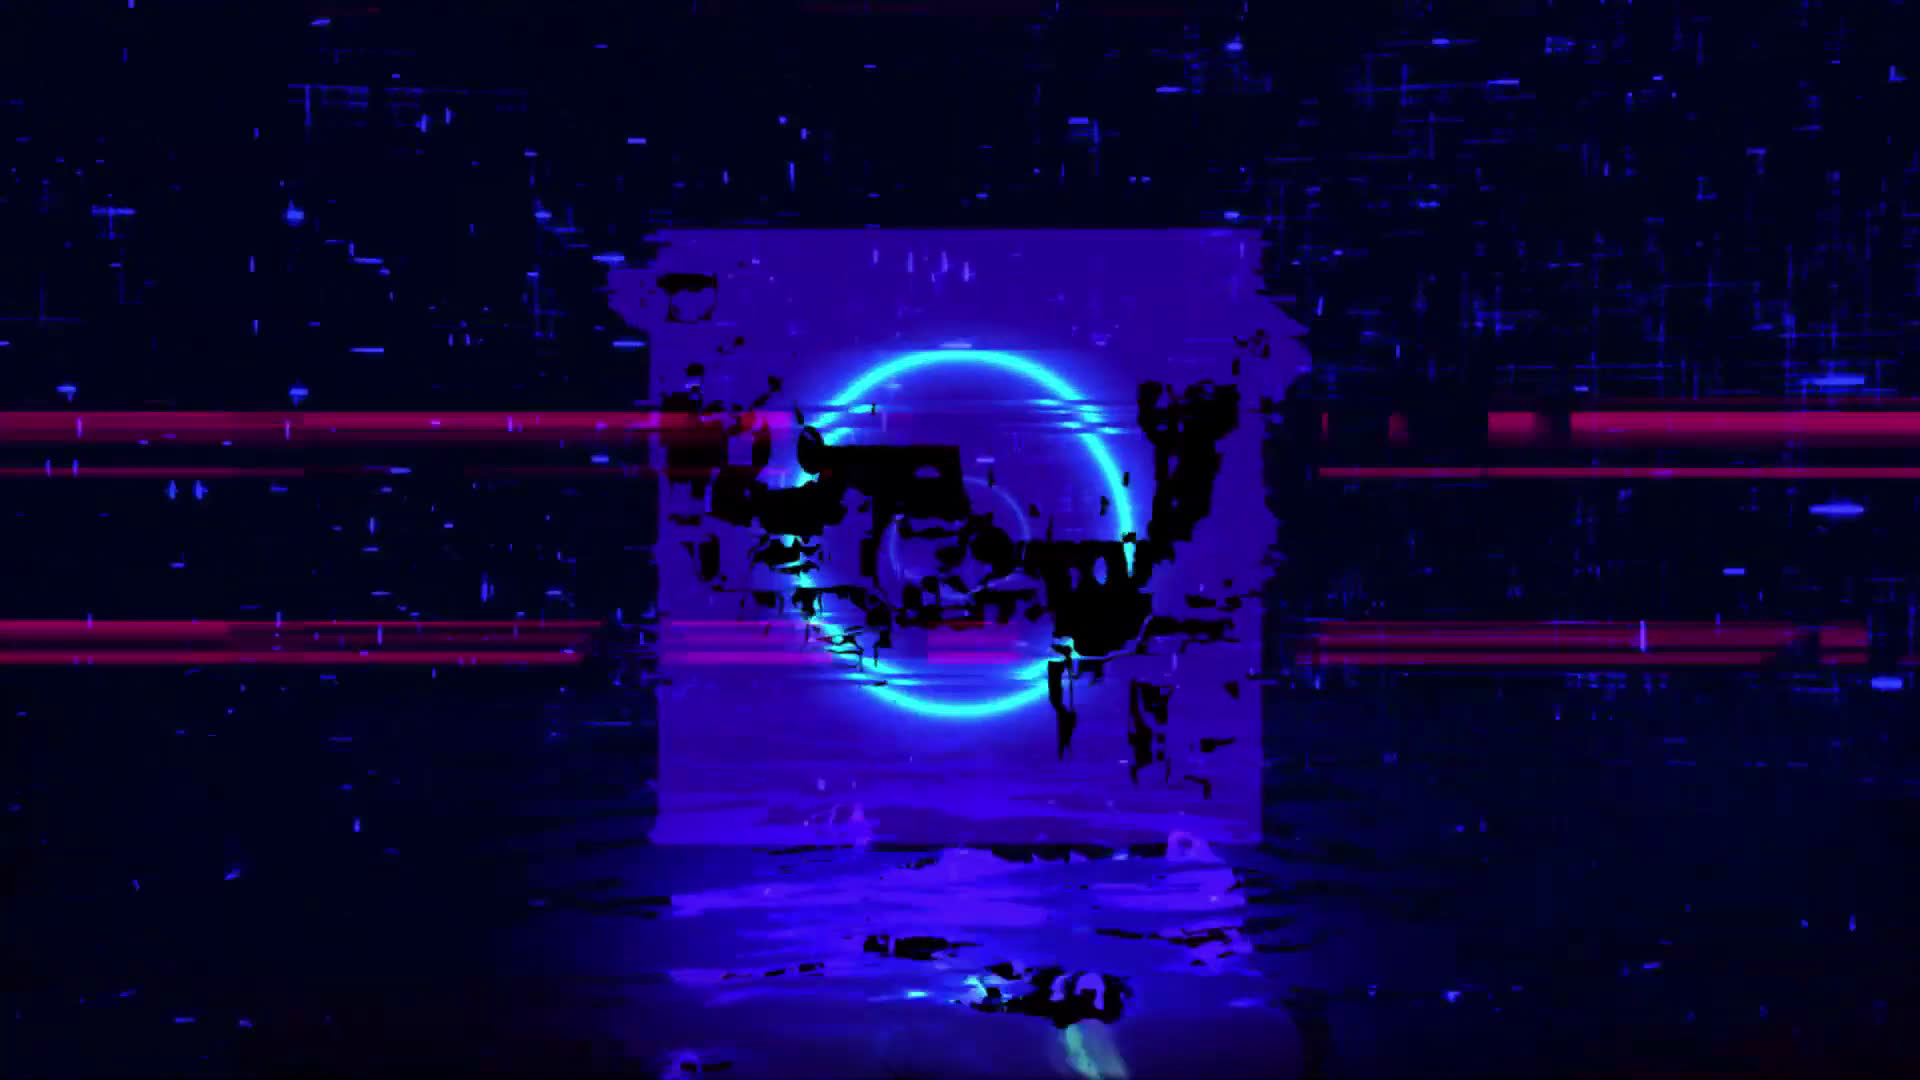 Cyberpunk Neon Live Wallpaper - Live Wallpaper